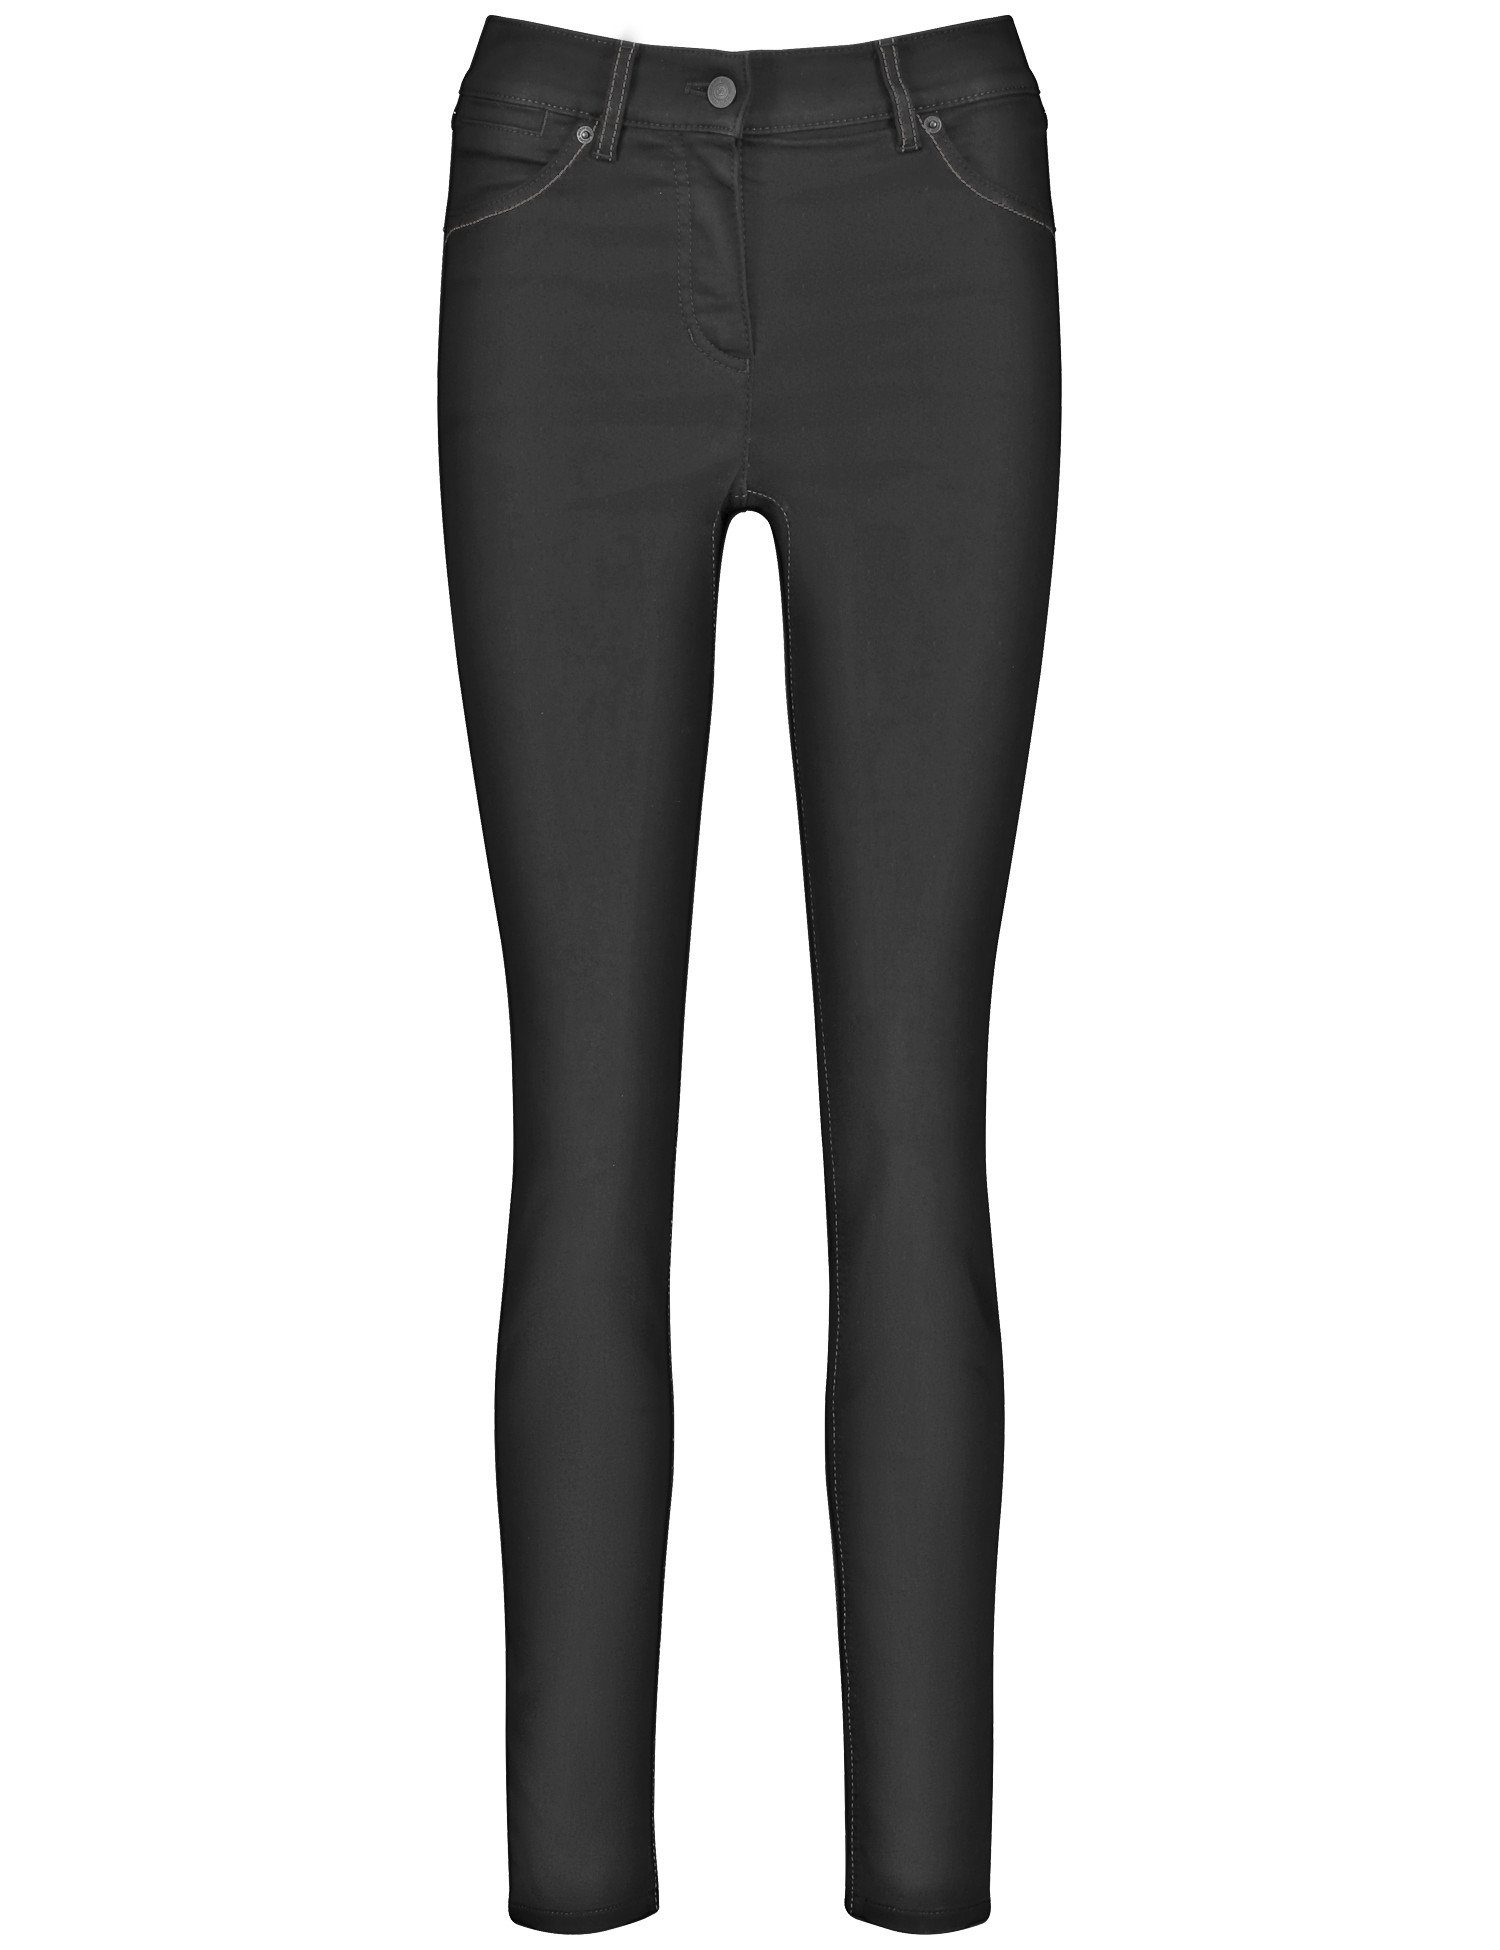 Denim WEBER Skinny Stretch-Jeans GERRY Black Best4me 5-Pocket Jeans Black